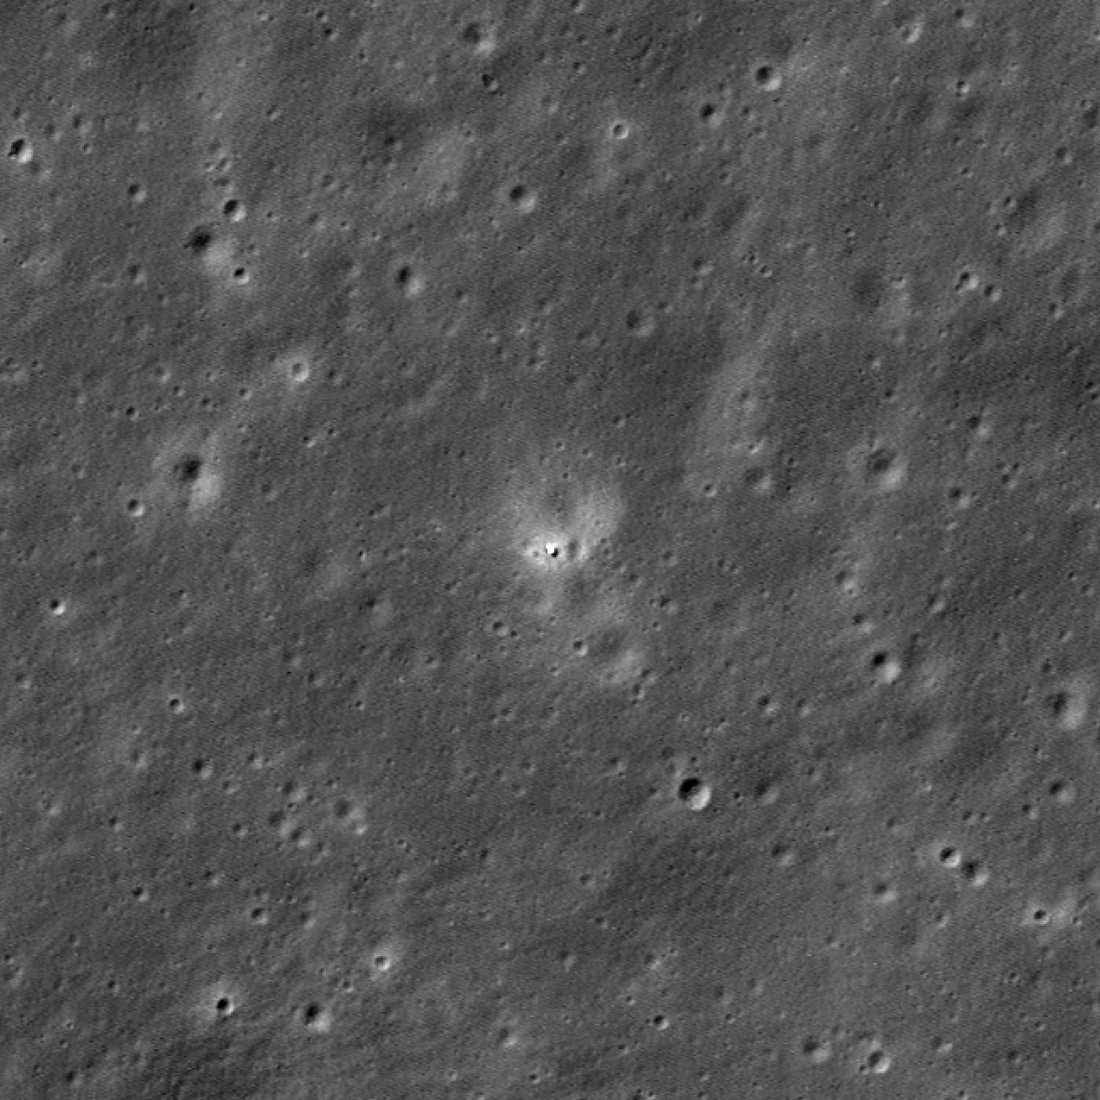  Посадочный модуль миссии «Чанъэ-6» в ударном кратере Аполлон, расположенном в бассейне Южный полюс — Эйткен на обратной стороне Луны / © NASA / GSFC / Arizona State University